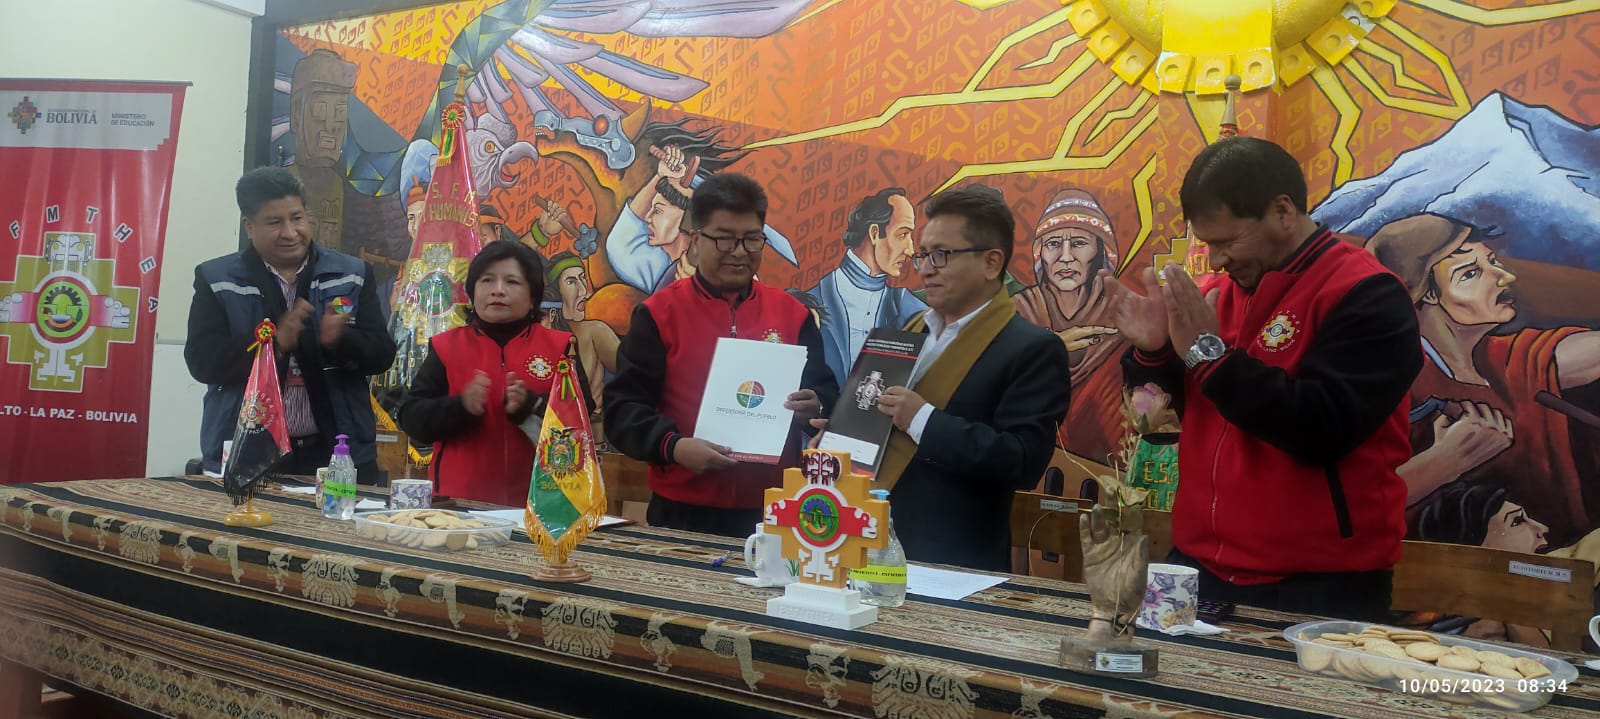 Defensoría del Pueblo y Escuela Superior de Formación de Maestros de El Alto establecen alianza para reproducir la promoción de derechos humanos